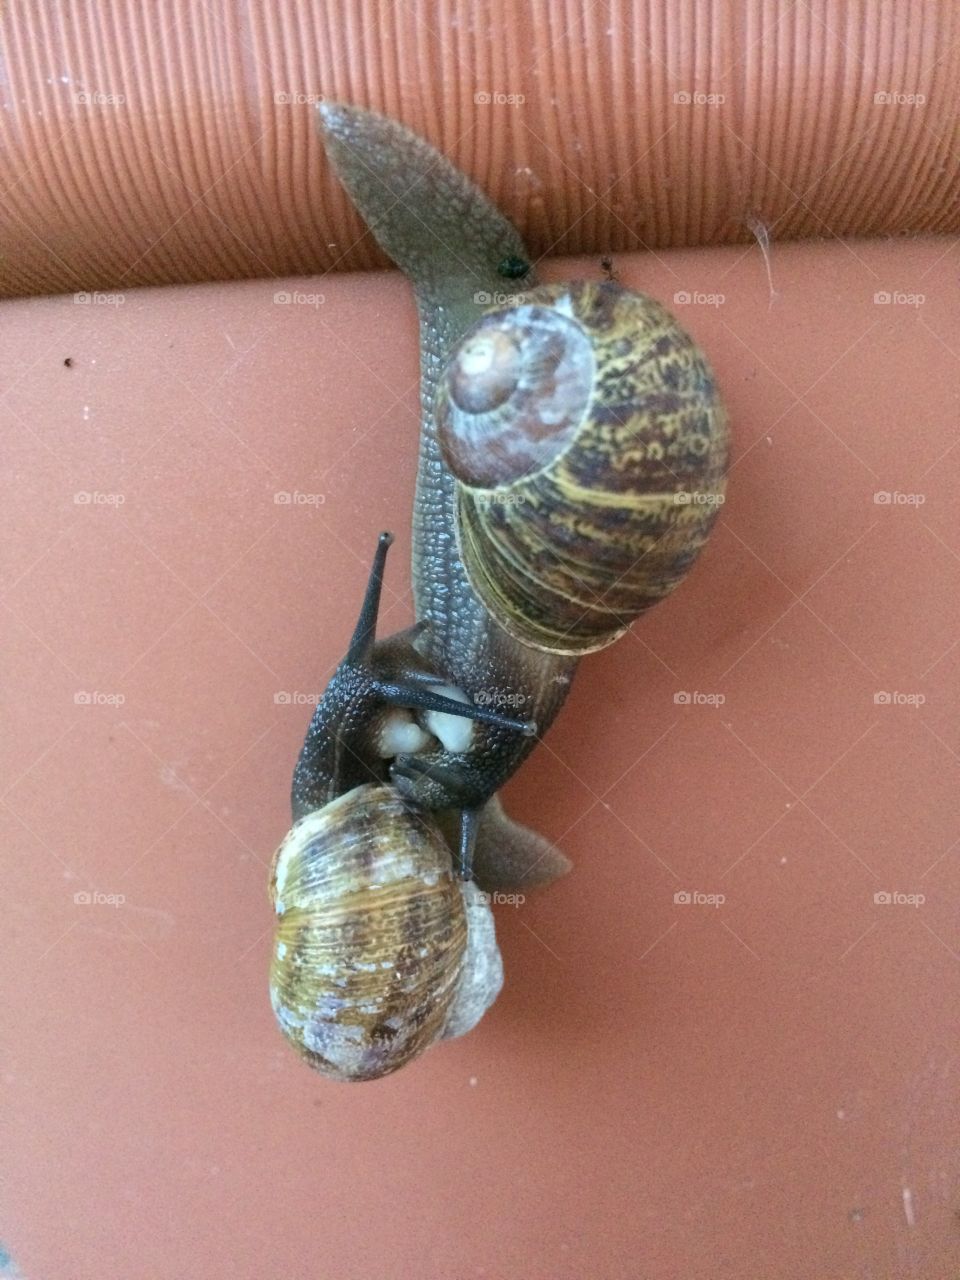 Snail to snail